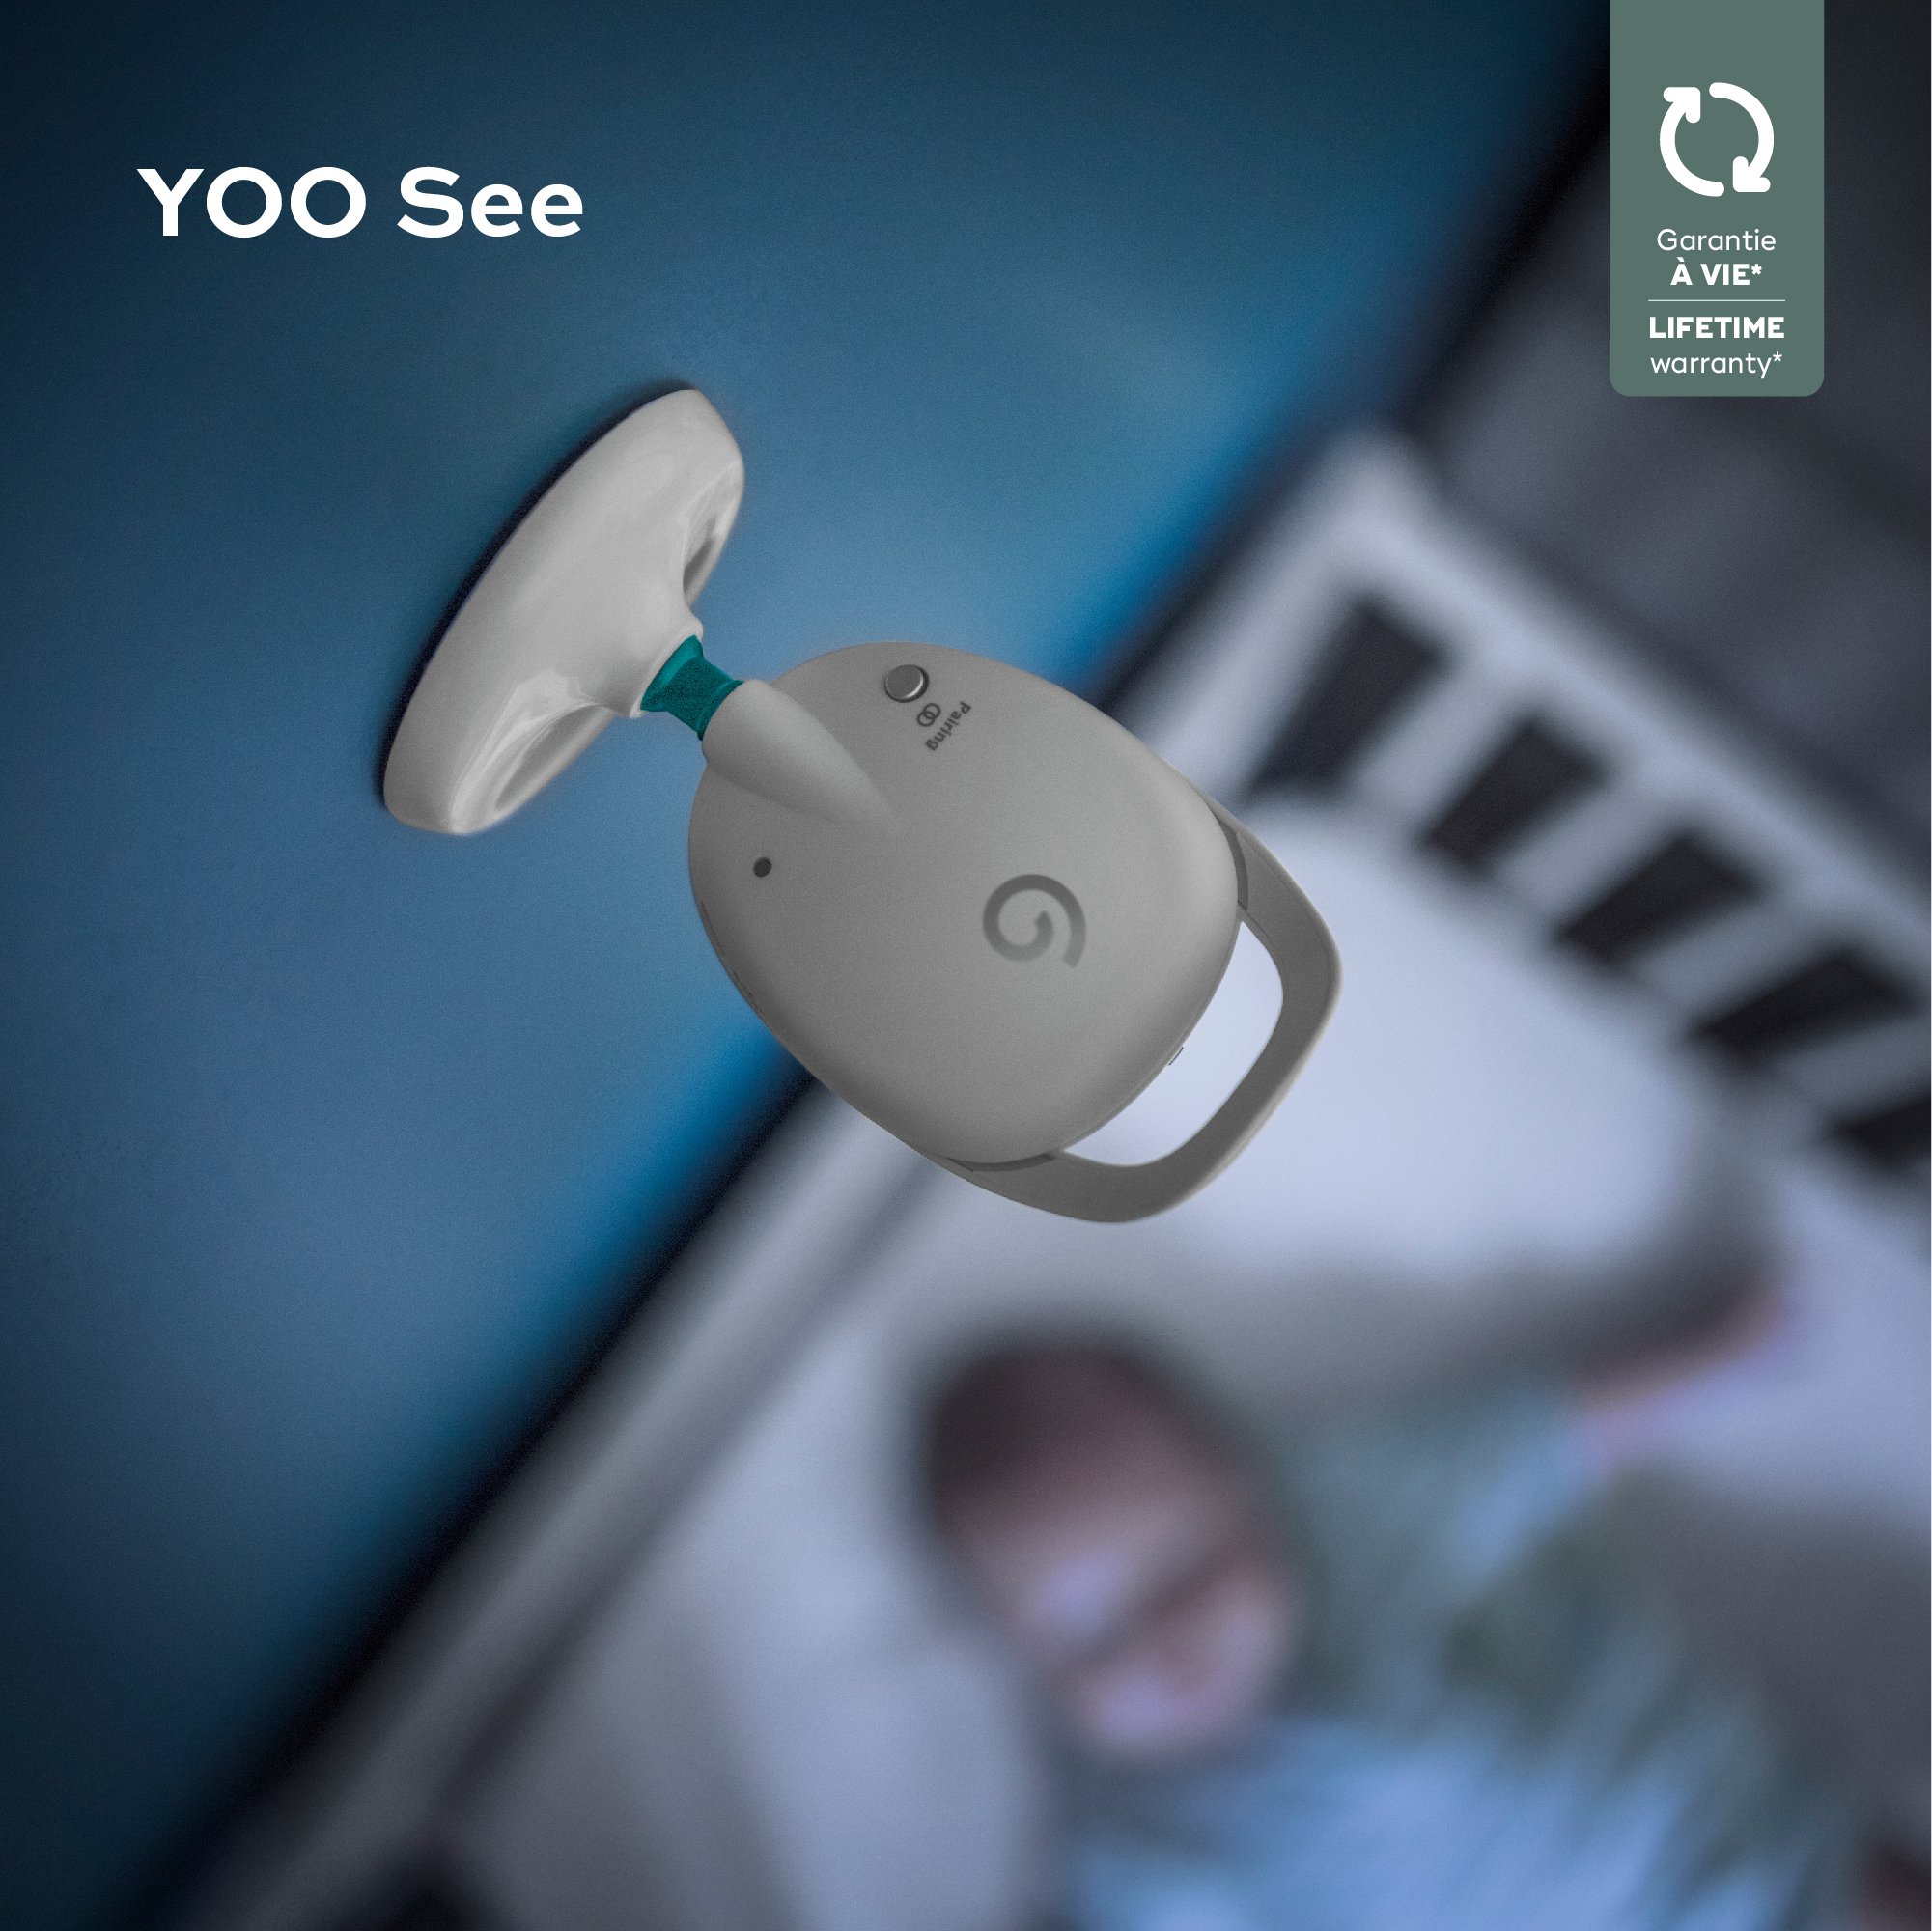 Caméra Additionnelle pour Babyphone Vidéo Yoo See de Babymoov